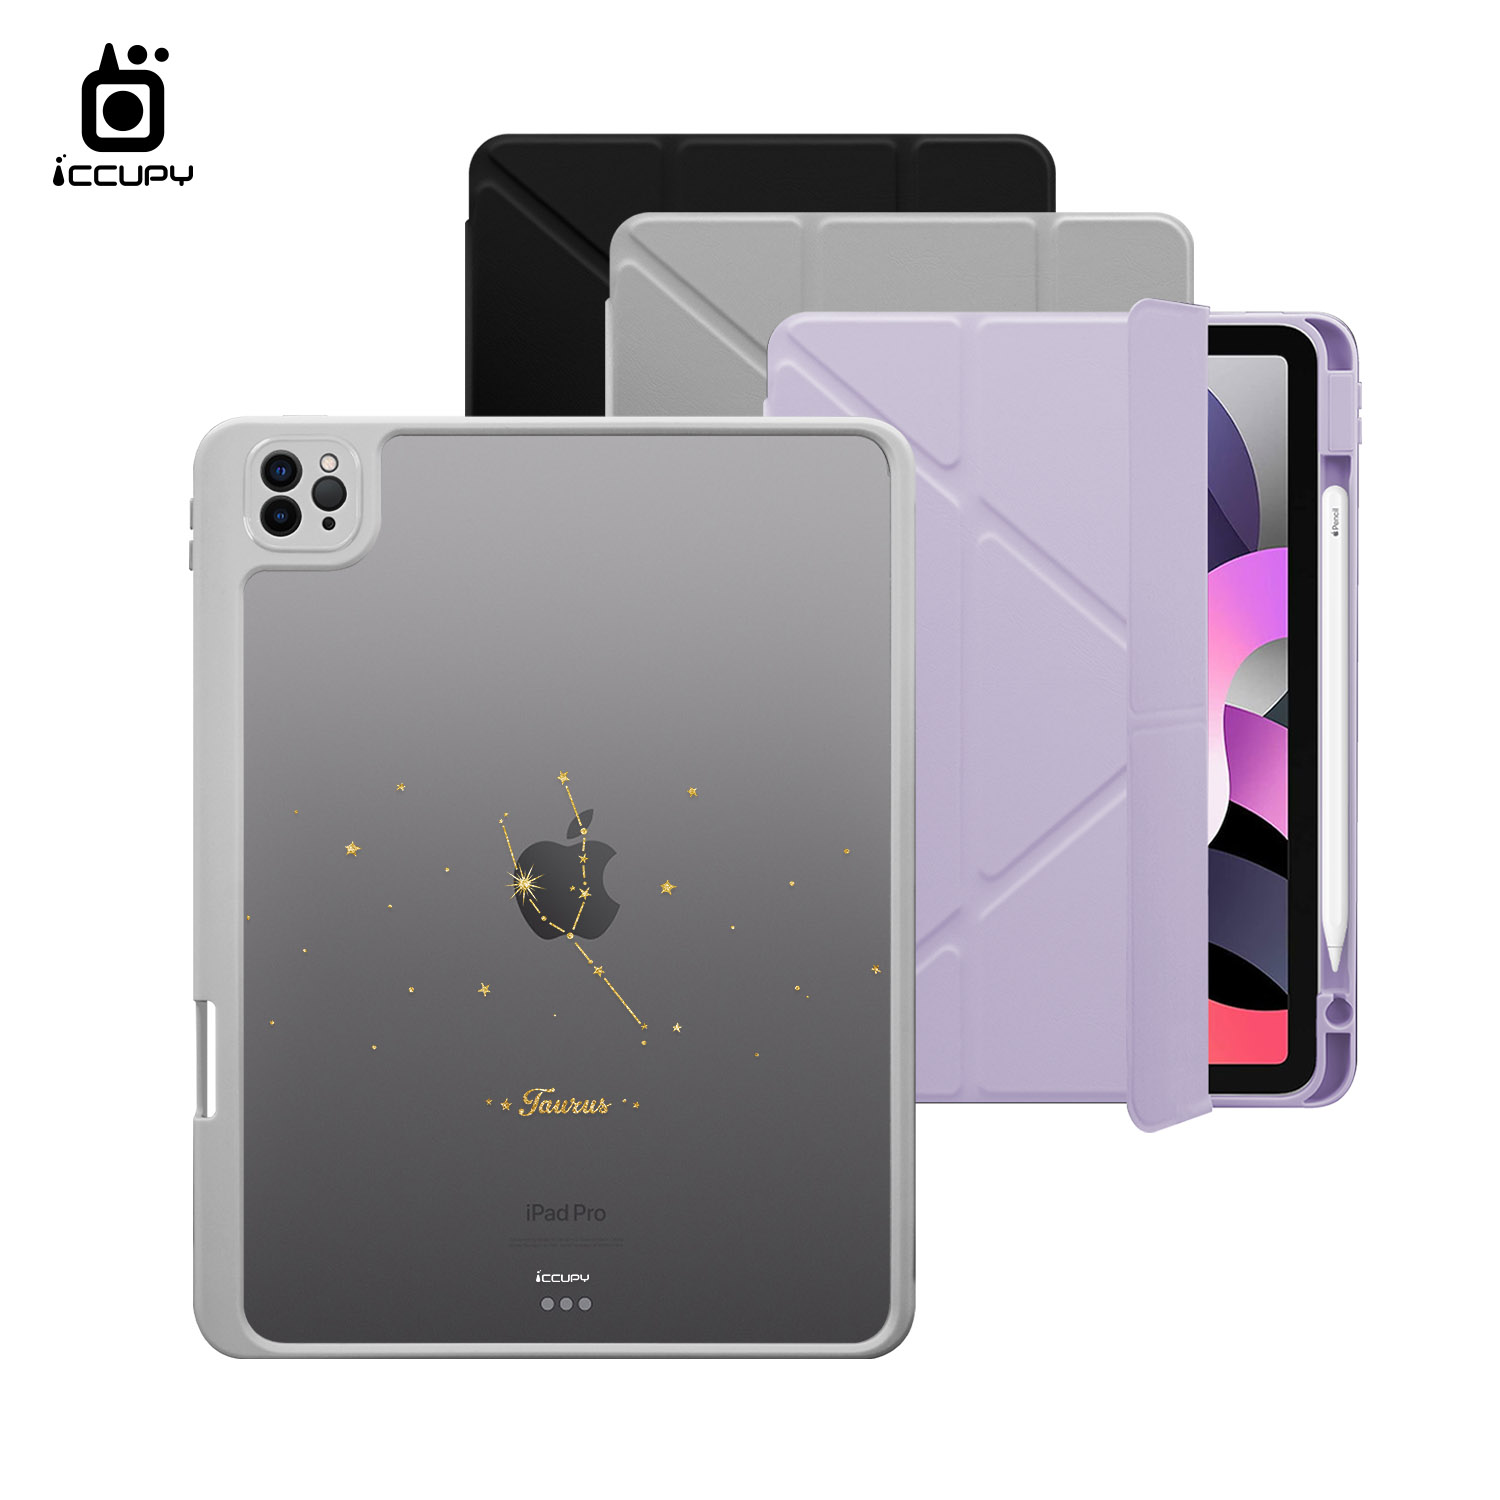 【星空-金牛座】黑占盾平板SN系列-卡扣式拆裝兩用(共三色) For iPad Pro(2020)11吋-黑占iCCUPY